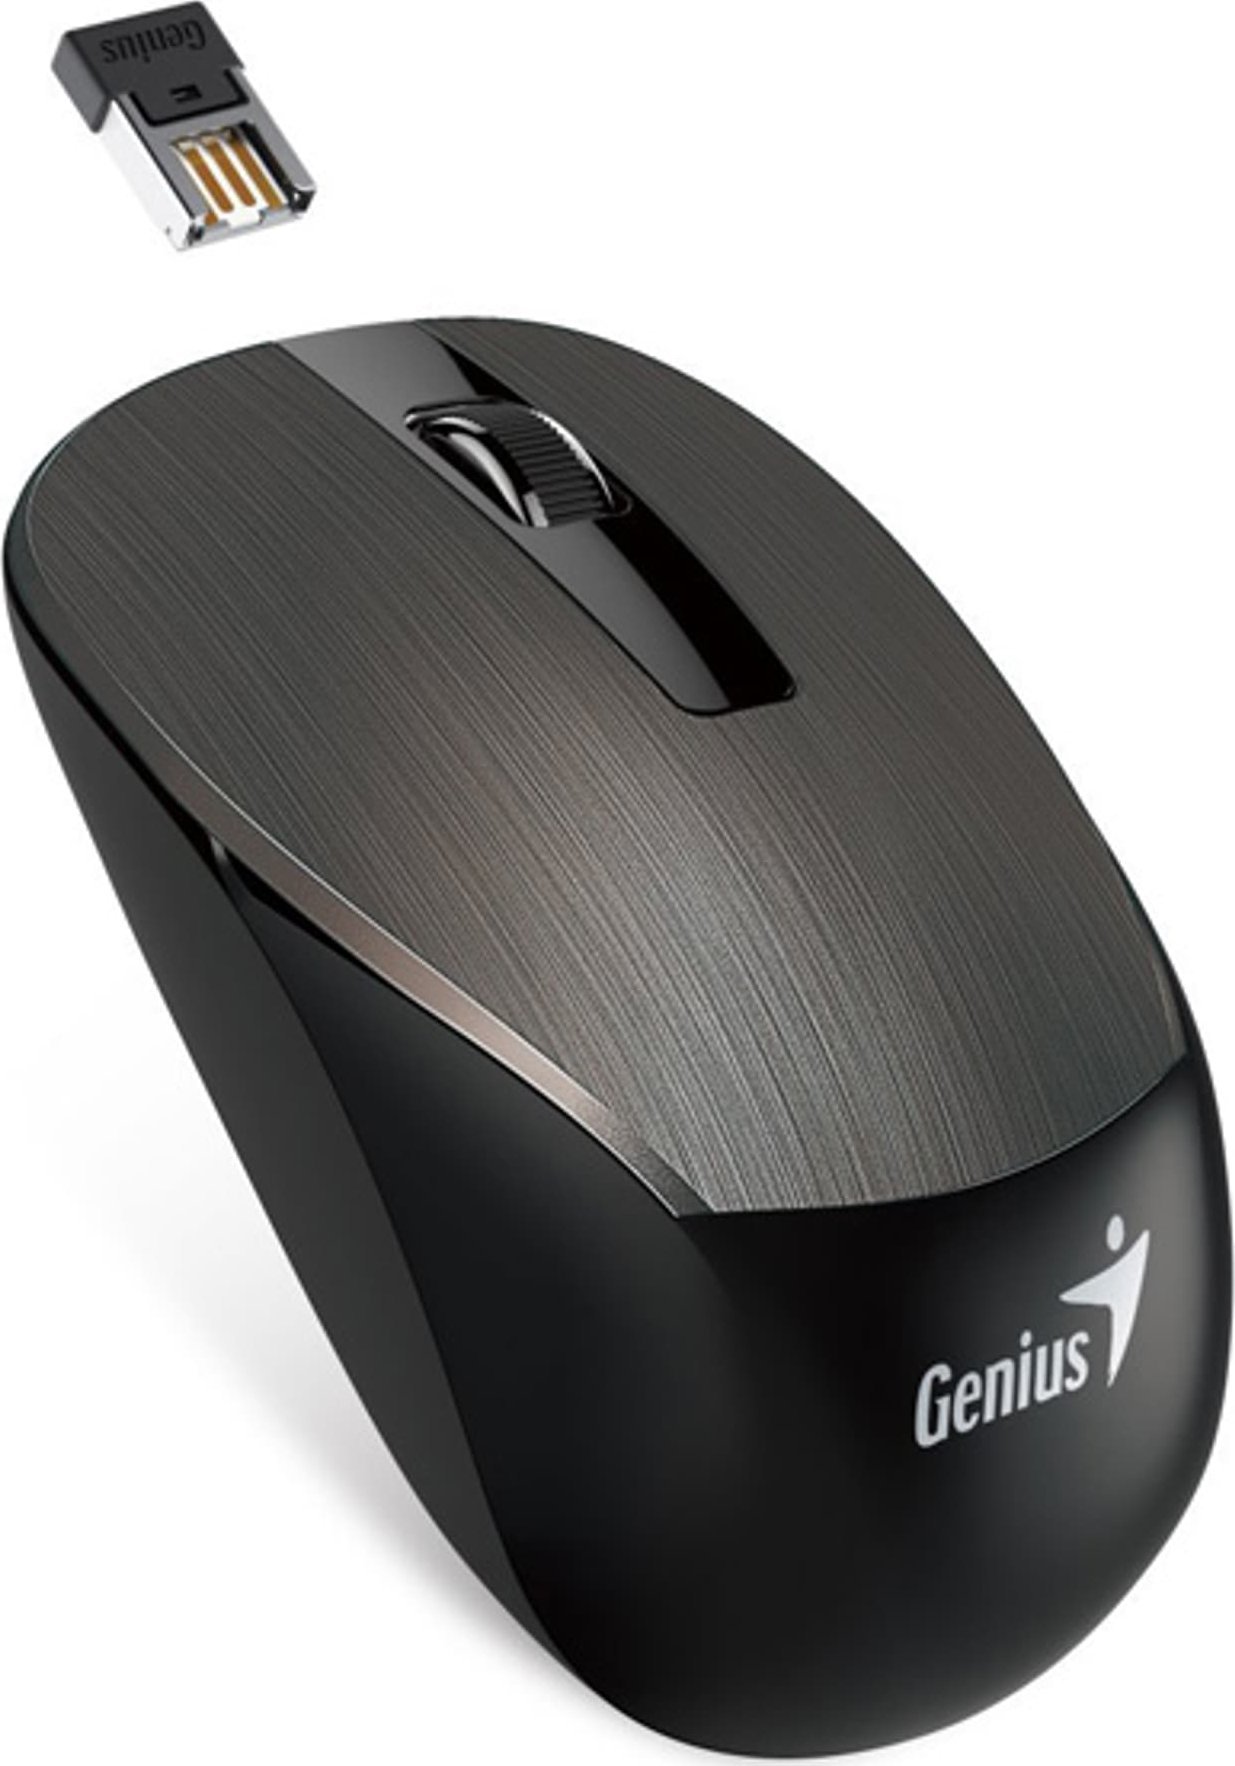 Mouse Genius Mouse Genius NX-7015, 1600 DPI, 2,4 [GHz], optic, cu 3 taste, fără fir, ciocolată, 1 buc AA, senzor ochi albaștri